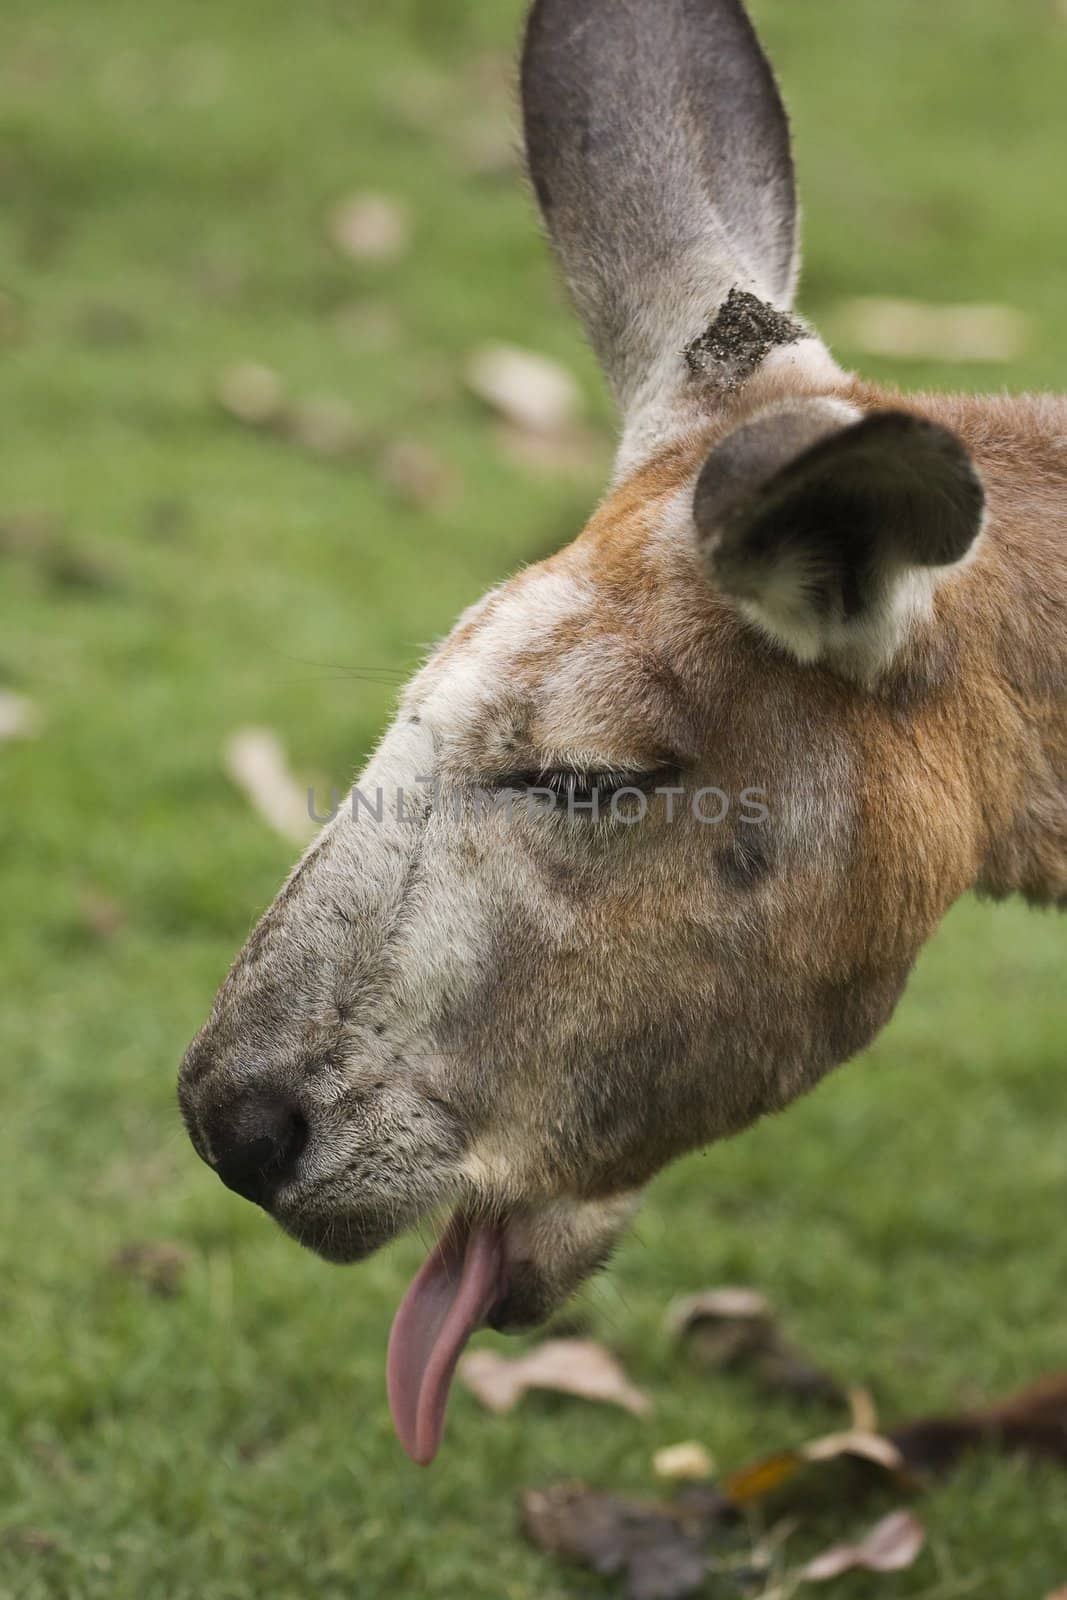 Kangaroo Tongue by Meikey